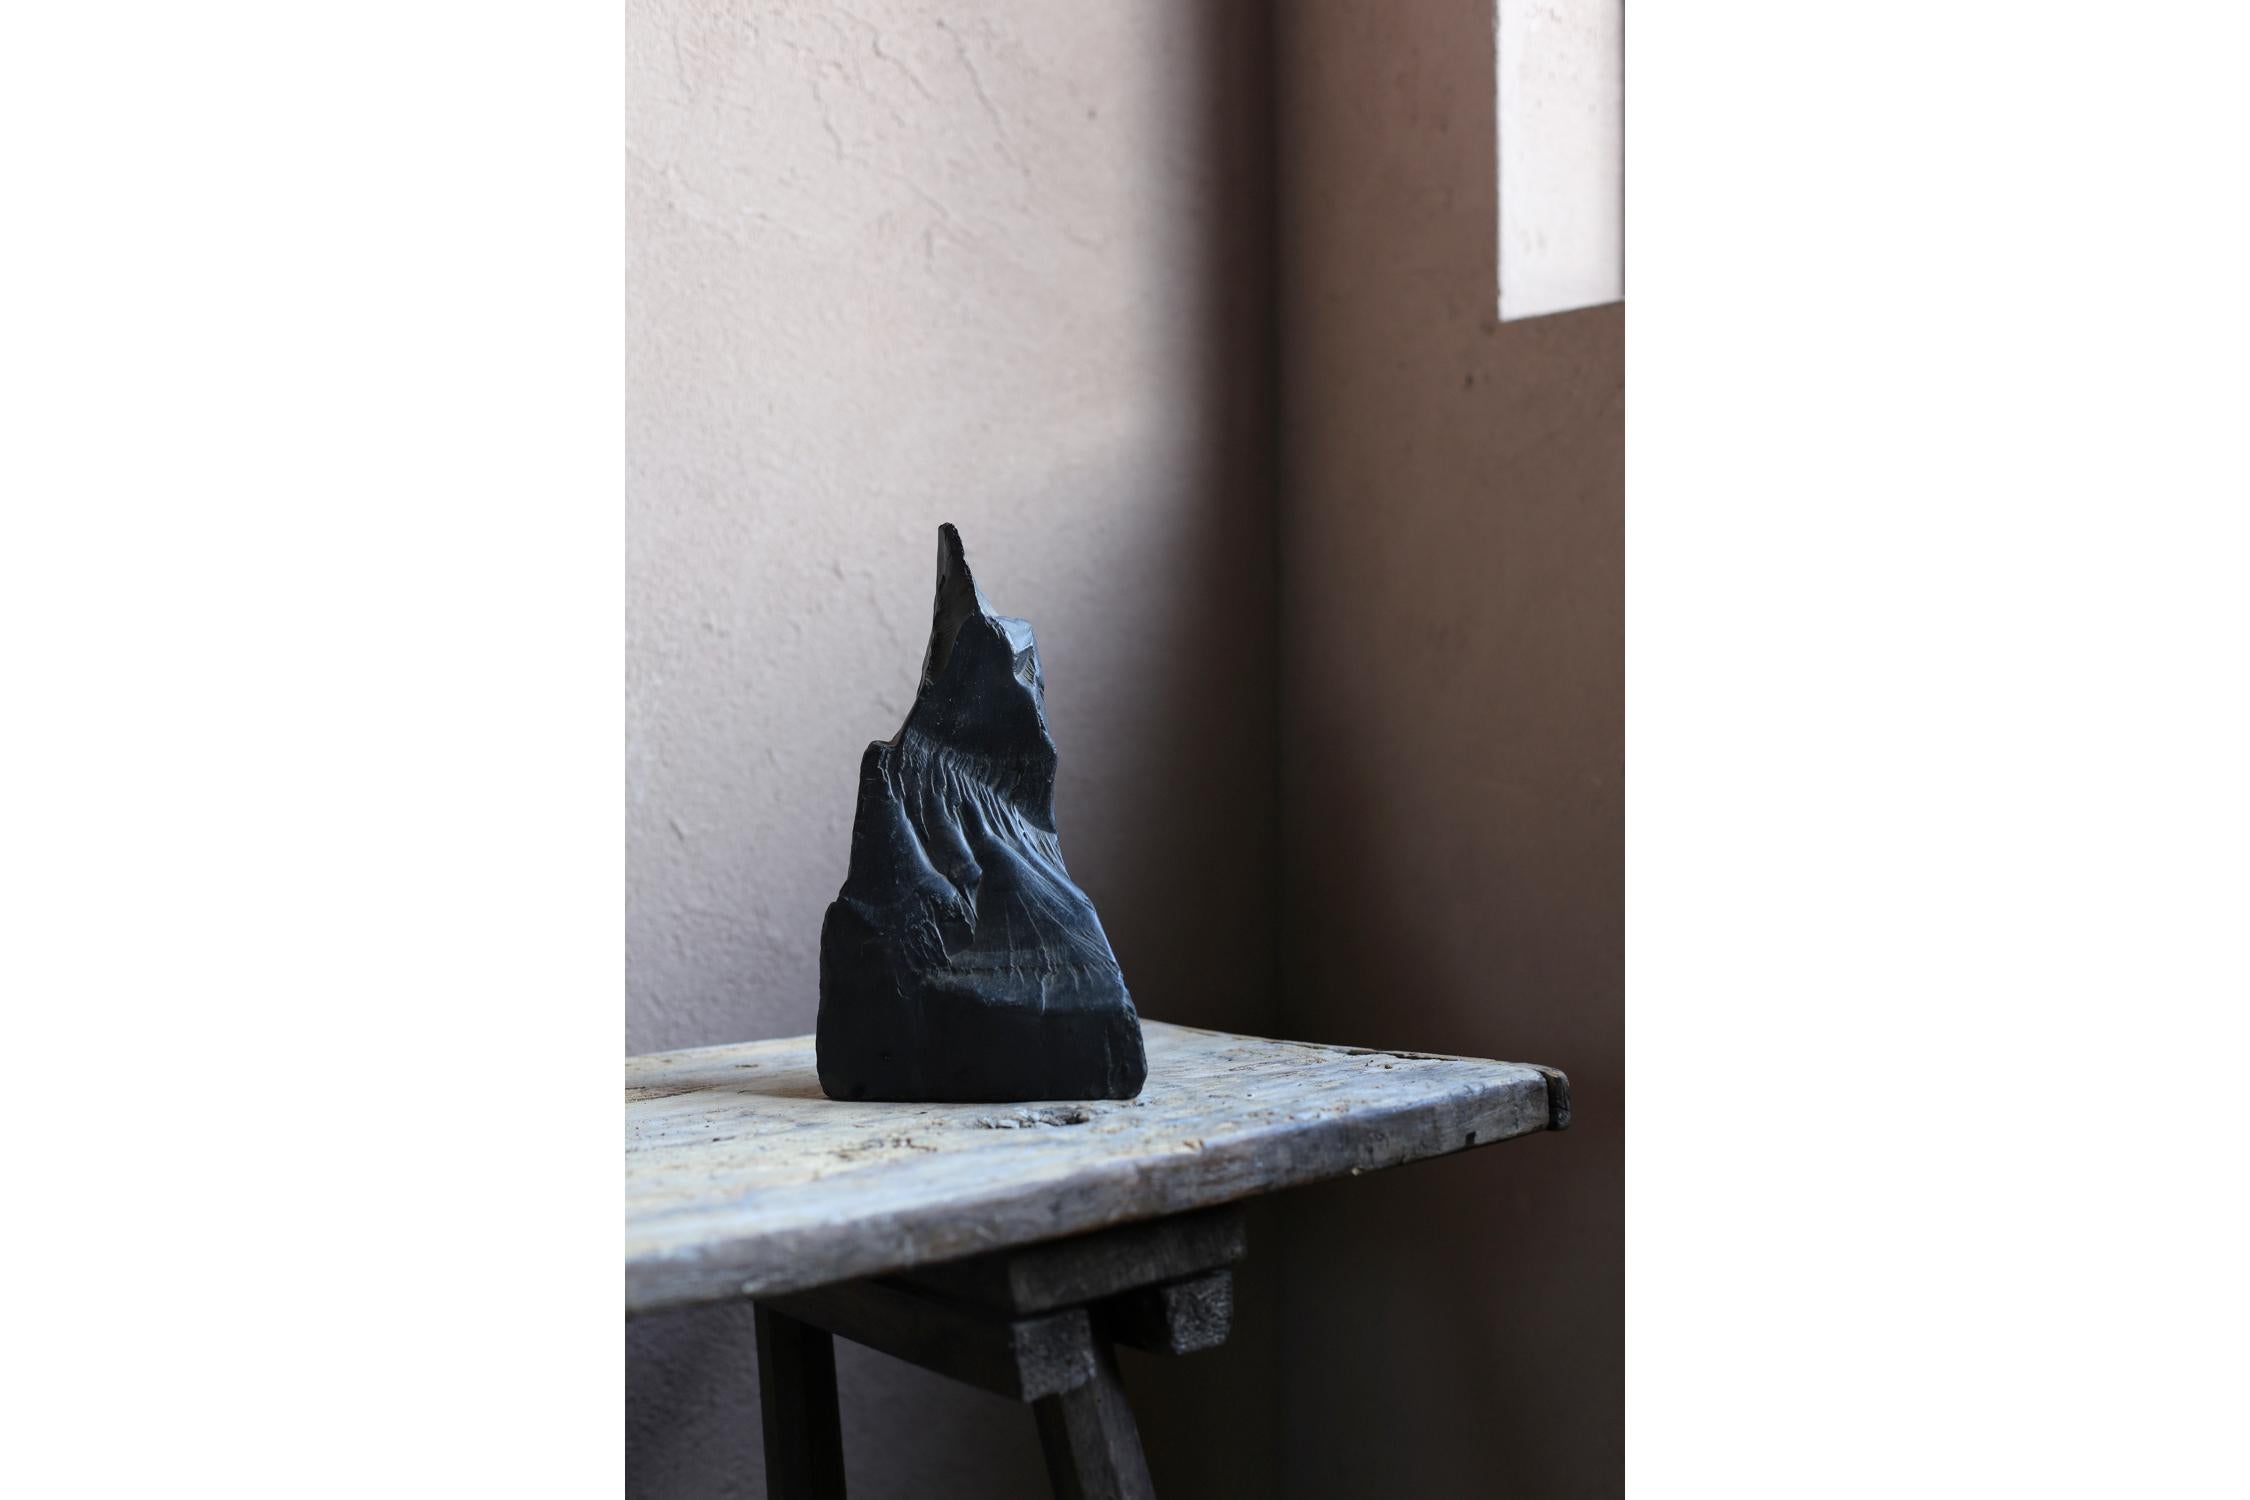 Dies ist ein altes japanisches Steinobjekt.
Ein schwarzes, glänzendes Steinobjekt, das der Form eines Buddhas ähnelt.
Eine schöne, von der Natur geschaffene Skulptur.
Ein Kunstobjekt, das Ihnen ein Gefühl von Wabi-Sabi vermittelt.

1kg
